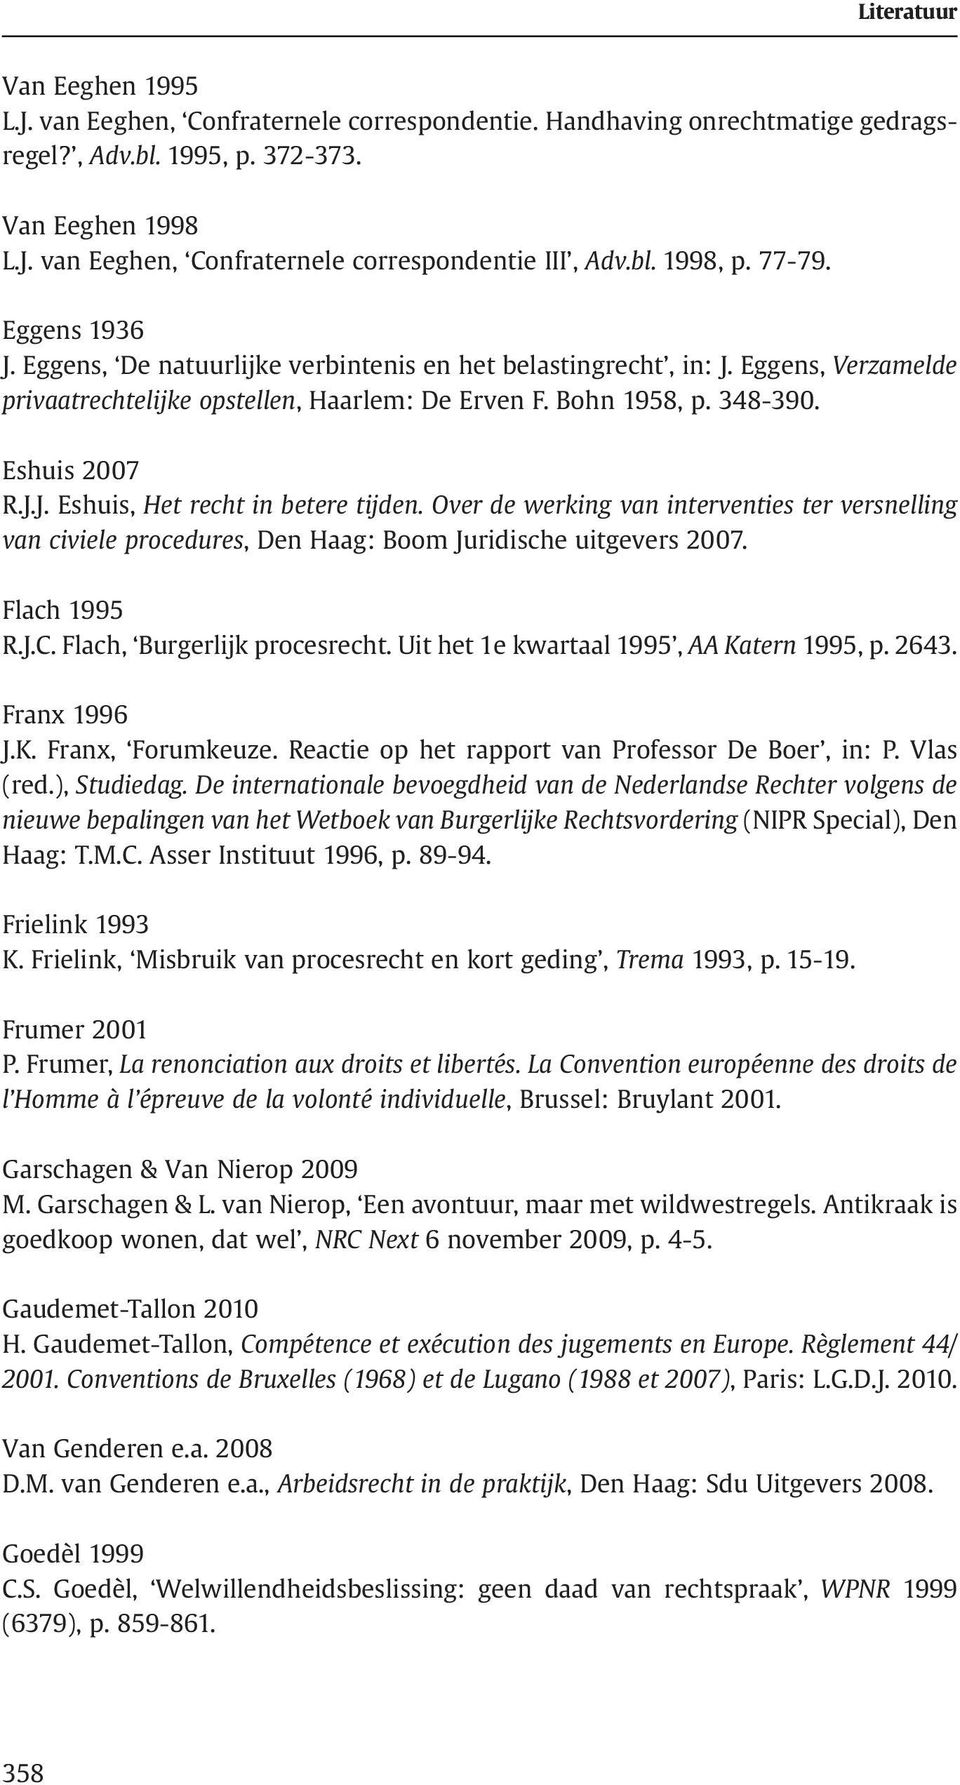 Eshuis 2007 R.J.J. Eshuis, Het recht in betere tijden. Over de werking van interventies ter versnelling van civiele procedures, Den Haag: Boom Juridische uitgevers 2007. Flach 1995 R.J.C.